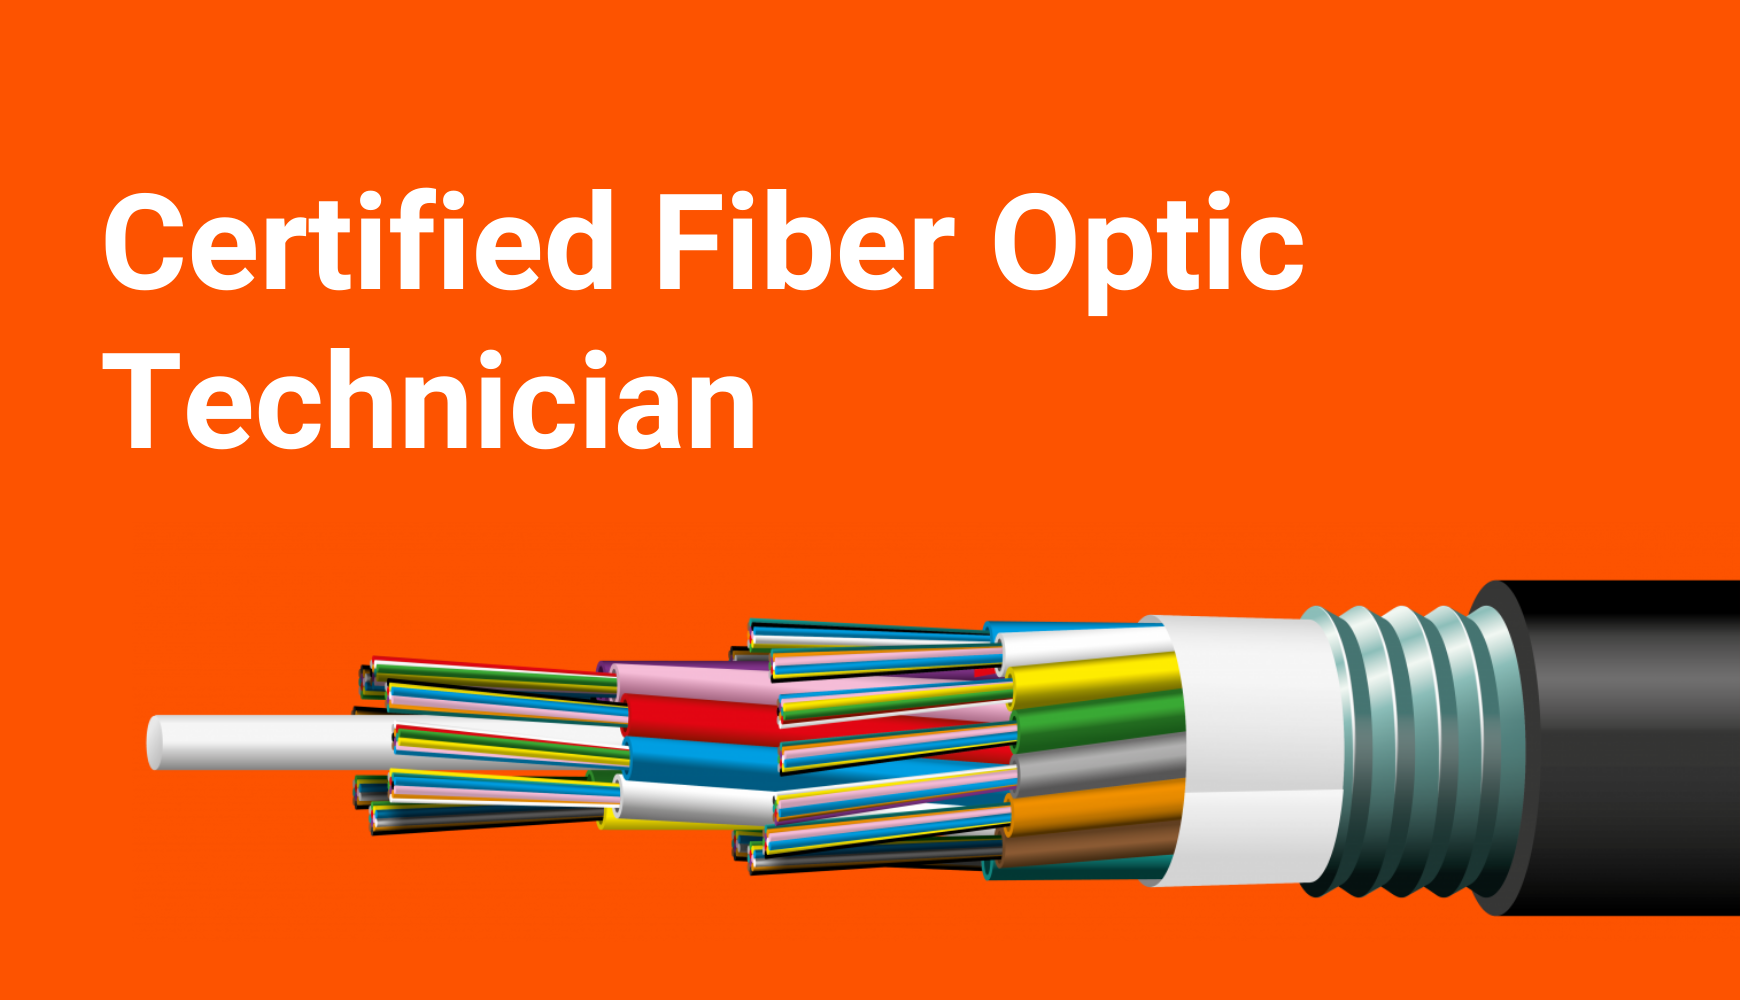 Certified Fiber Optic Technician